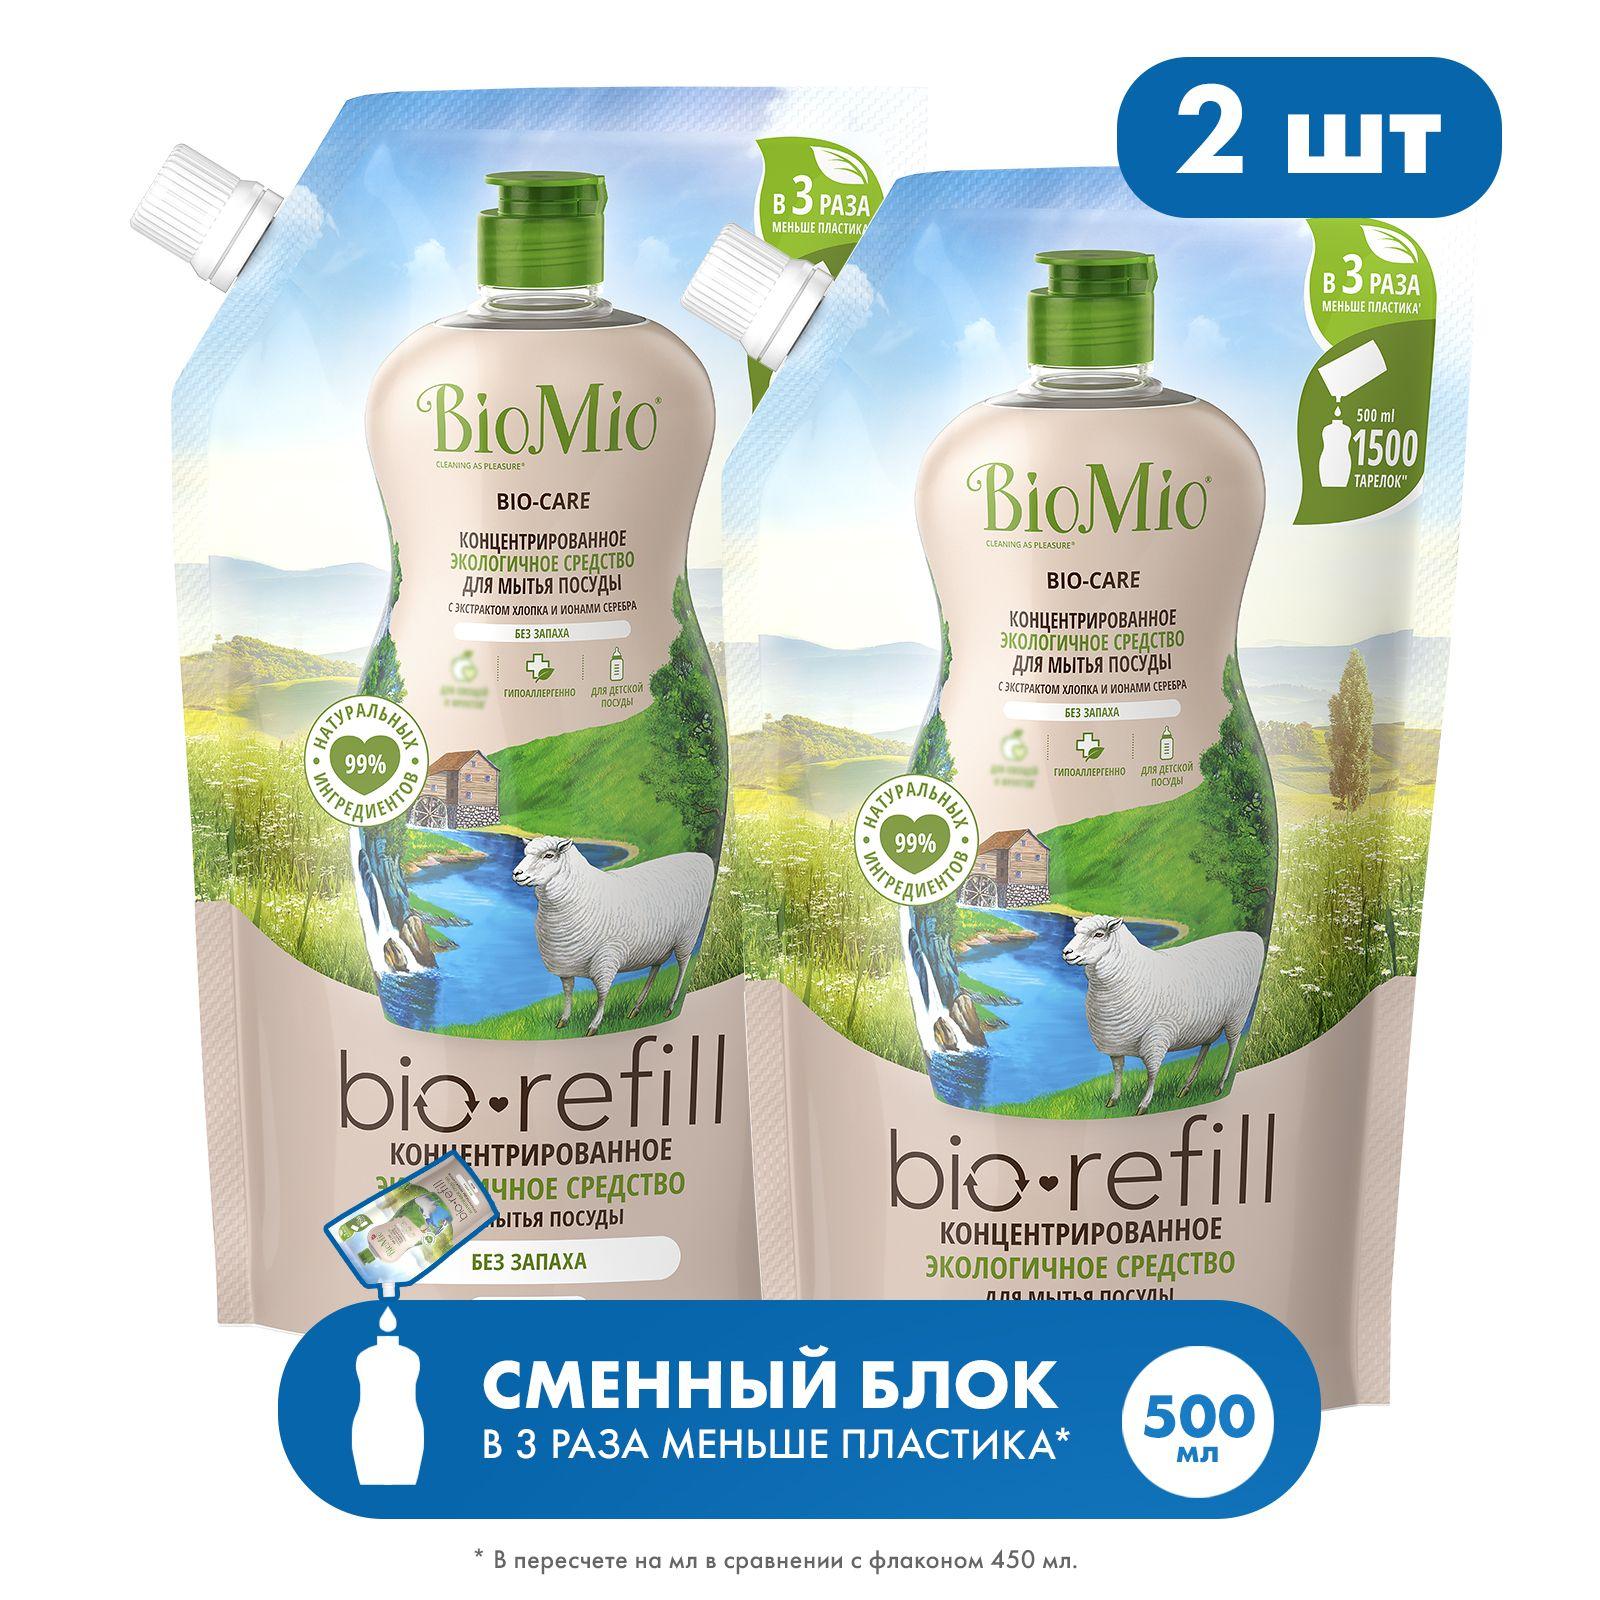 Экологичное средство для мытья посуды гель BioMio, в том числе детской, с экстрактом хлопка, концентрат, без запаха, сменный блок, 500 мл 2 шт